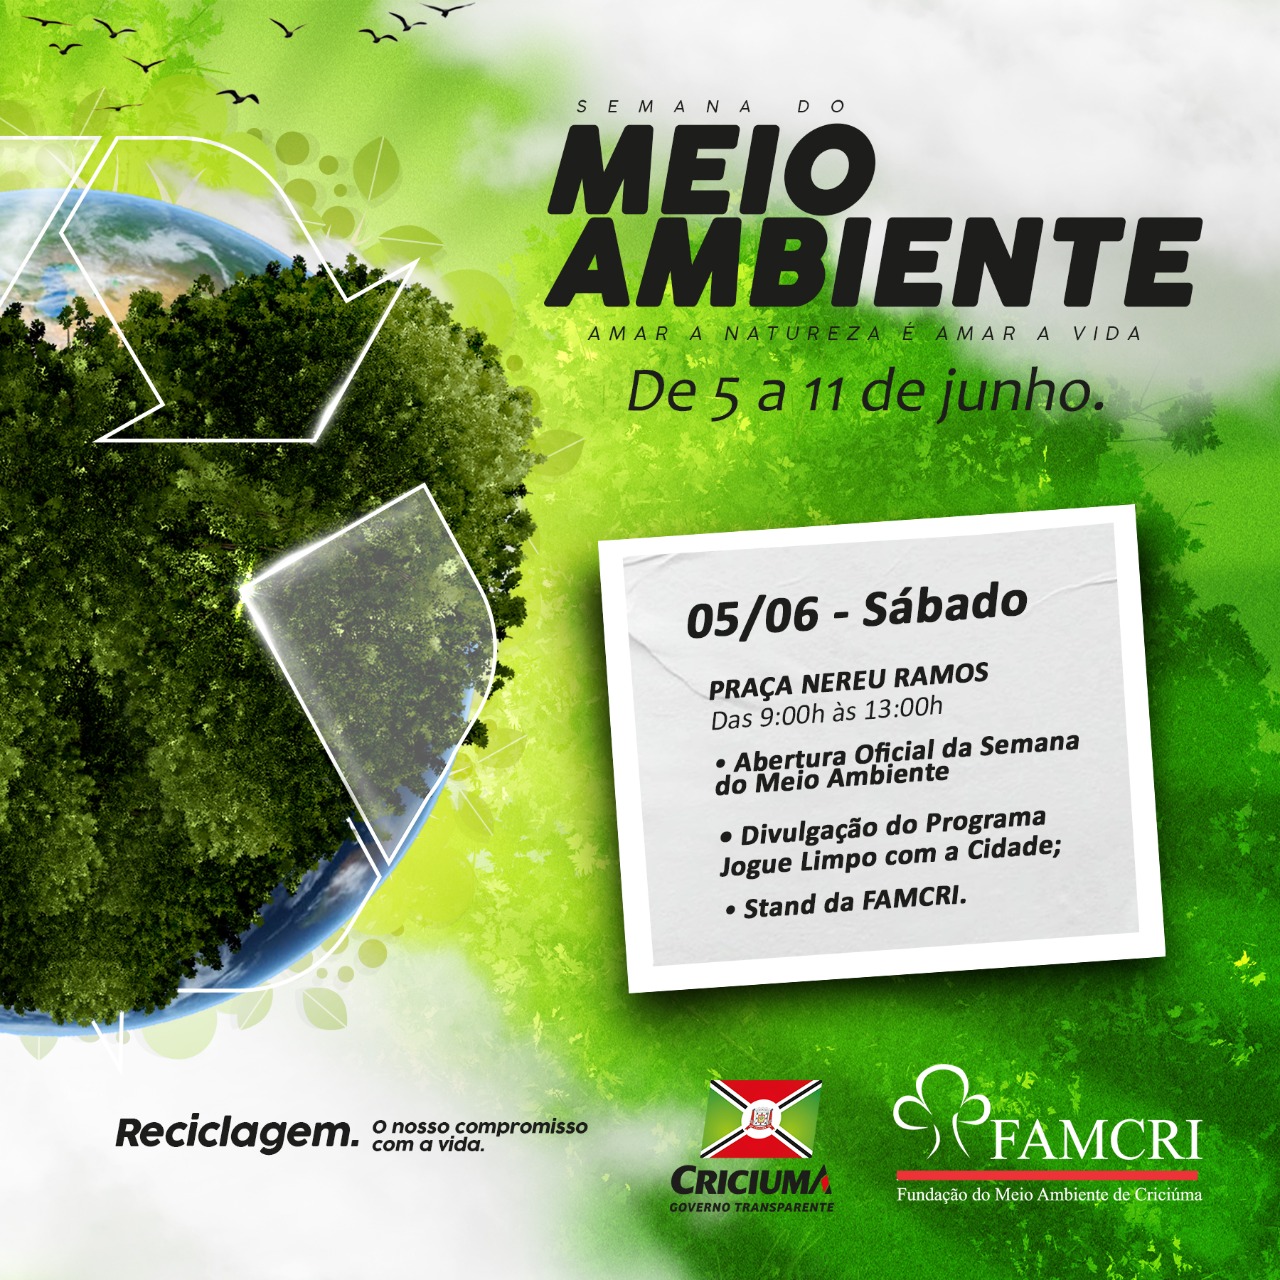 Famcri inicia Semana do Meio Ambiente neste sábado na Praça Nereu Ramos